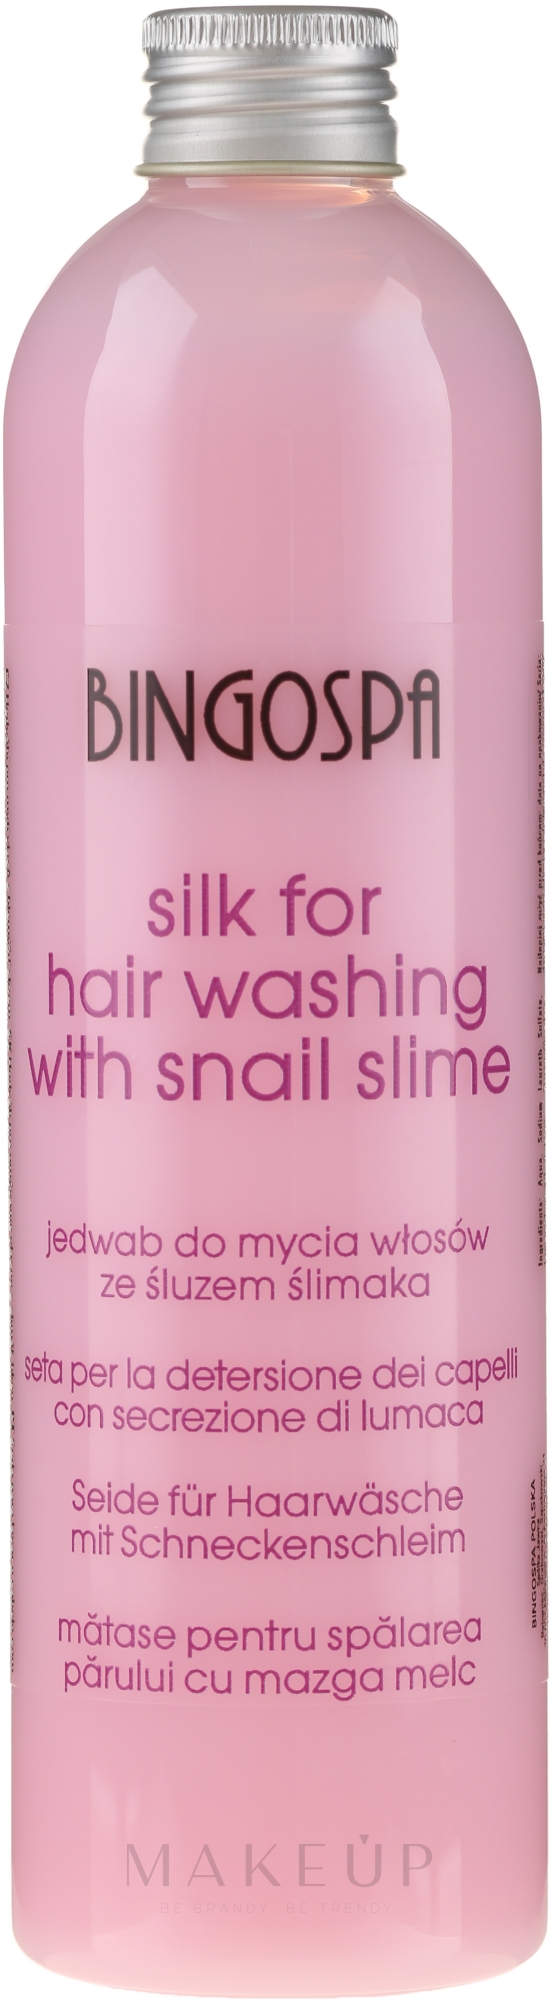 Seide zum Haarwaschen mit Schneckenschleim - BingoSpa Silk For Hair Washing With Snail Slime — Foto 300 ml